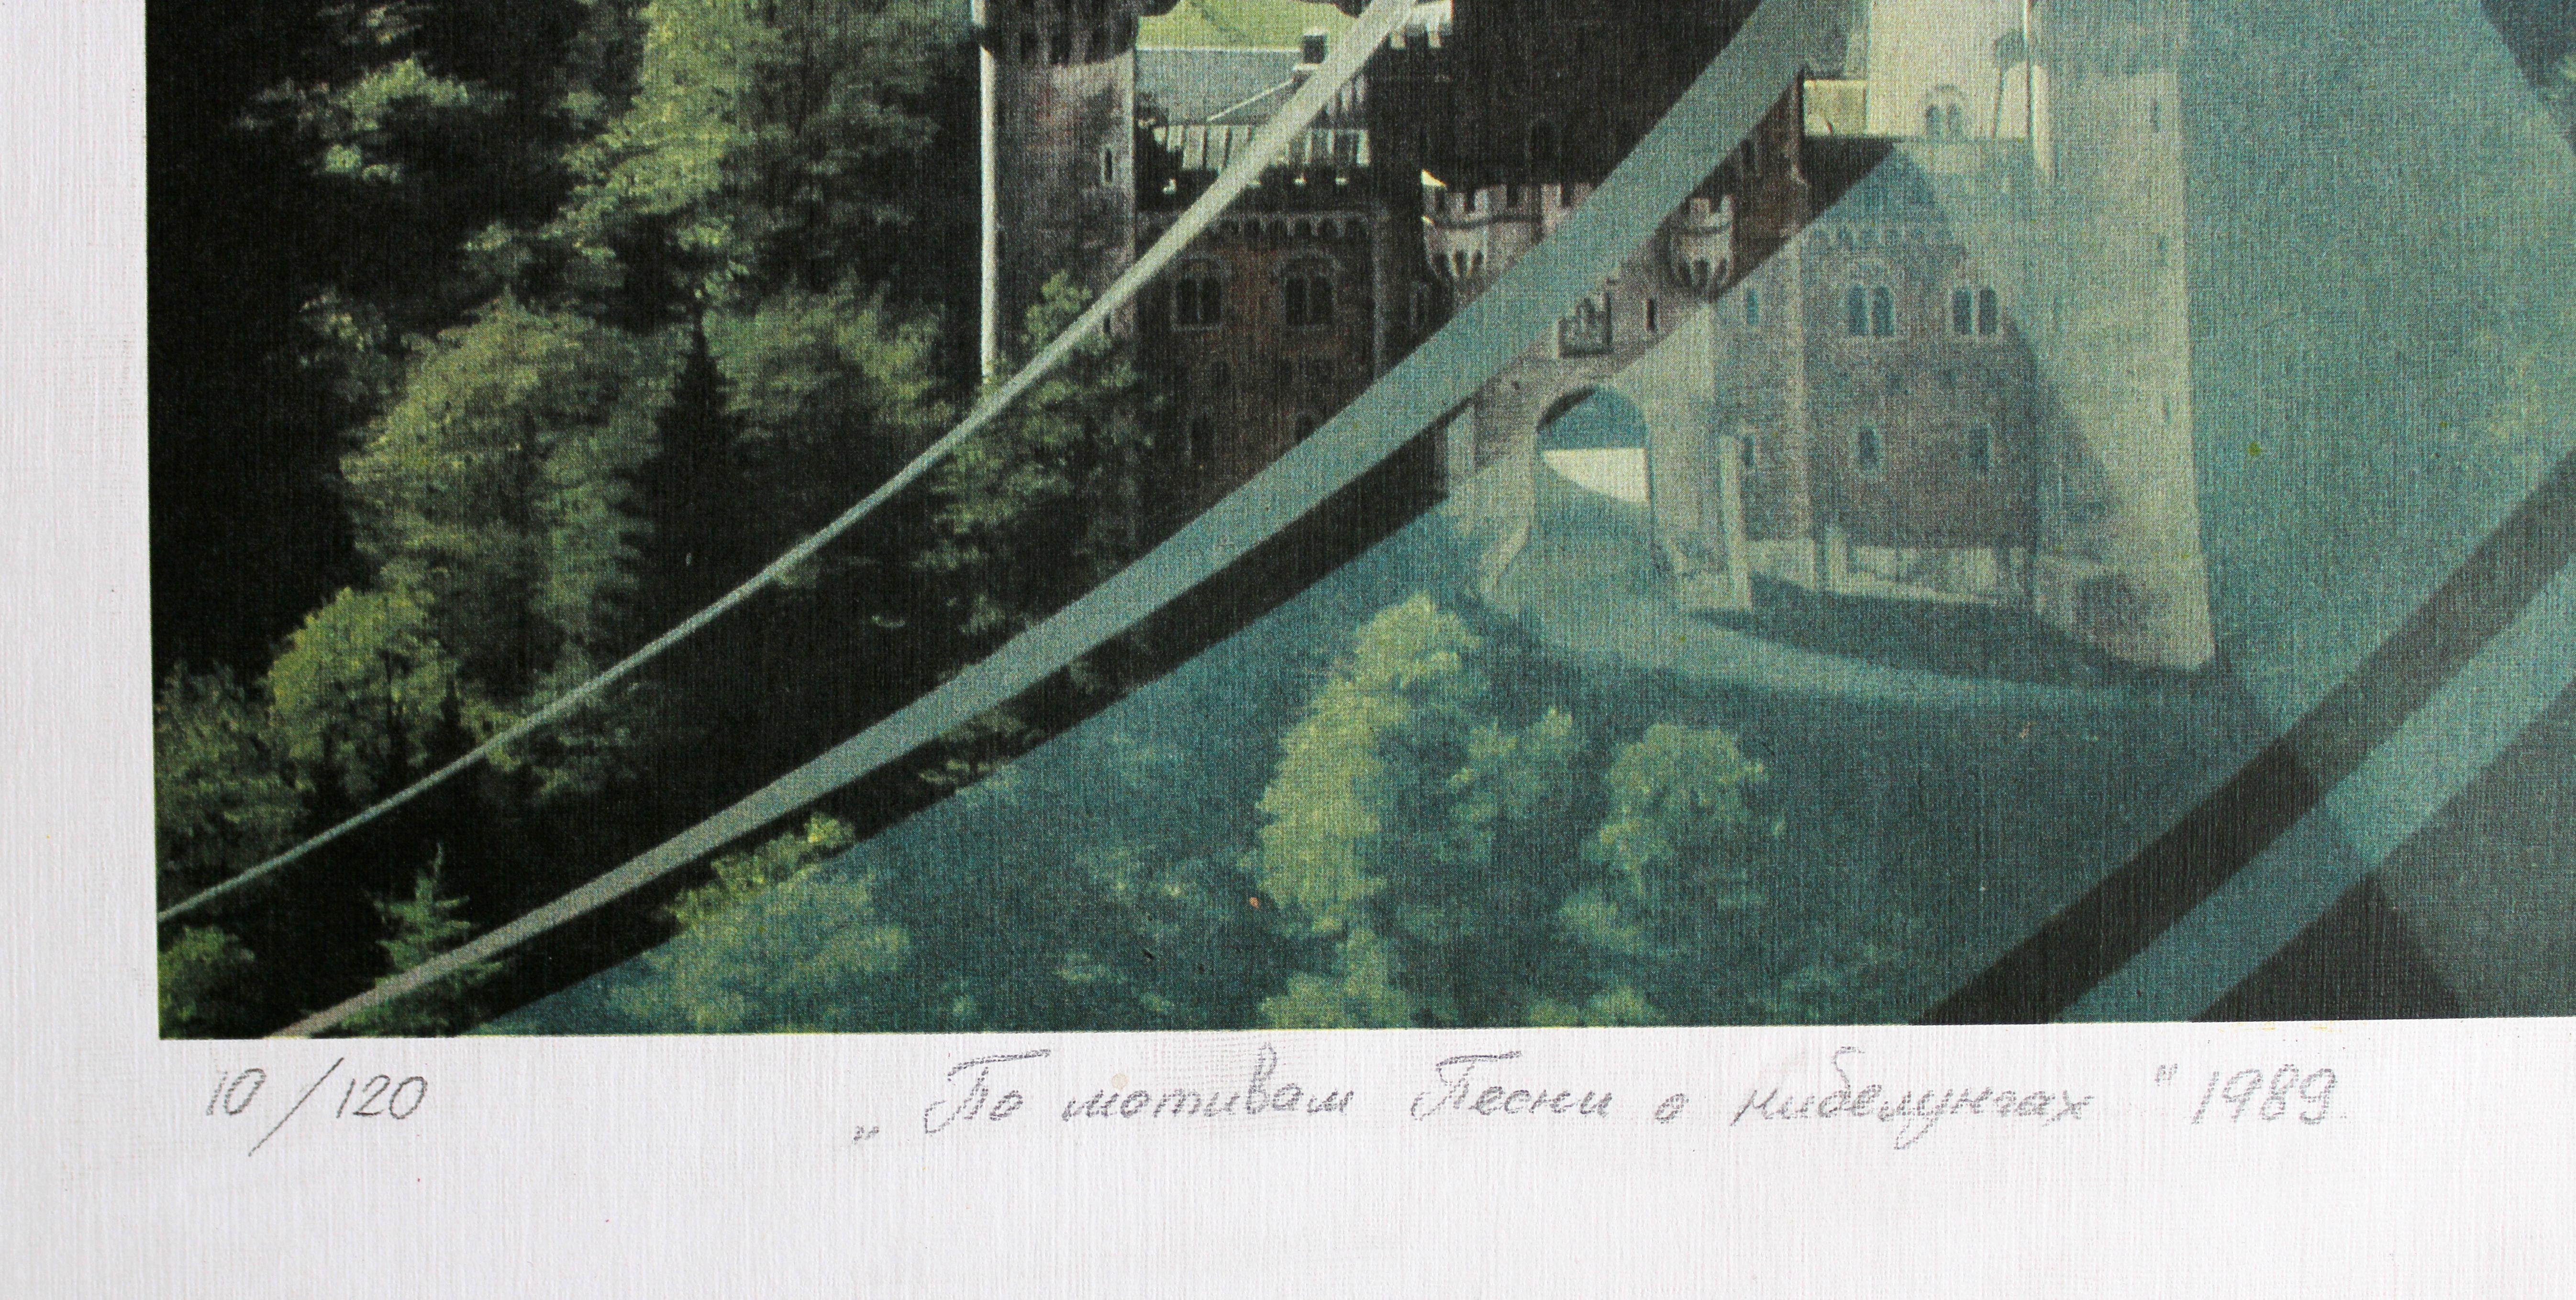 Inspiriert durch das Nibelungenlied. 1989, Papier, Siebdruck, 60x32 cm (Surrealismus), Print, von Vladimir Pavlov